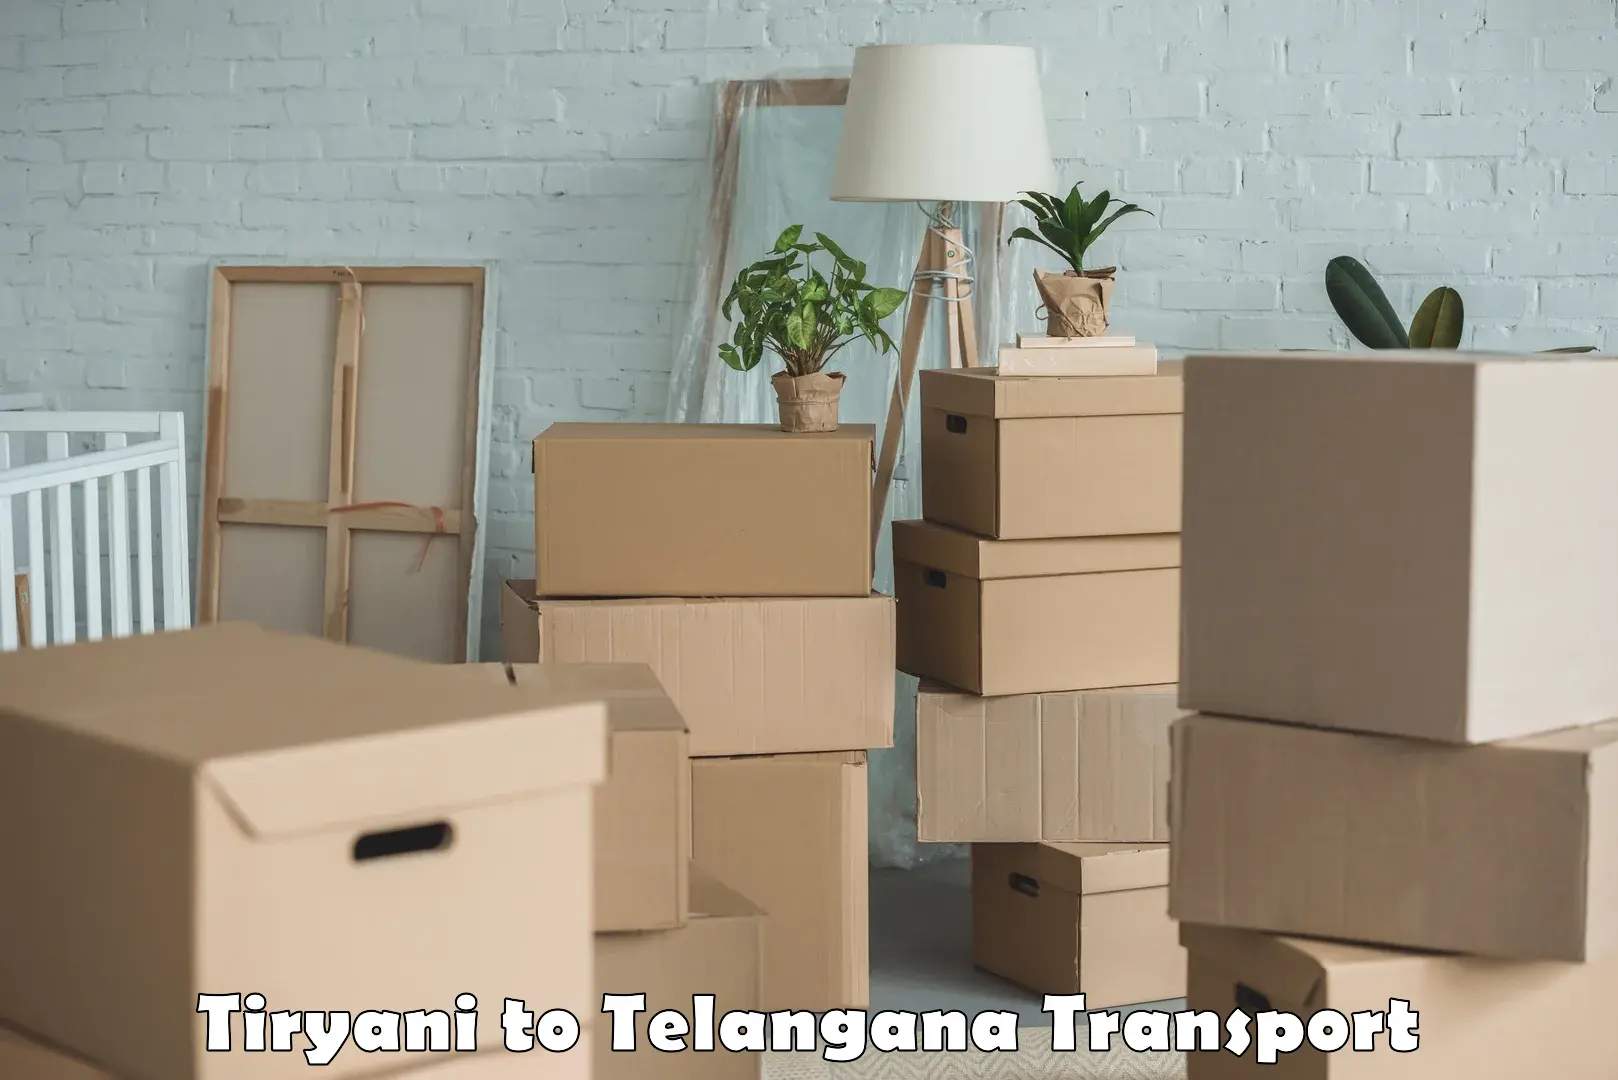 Delivery service Tiryani to Narsapur Medak